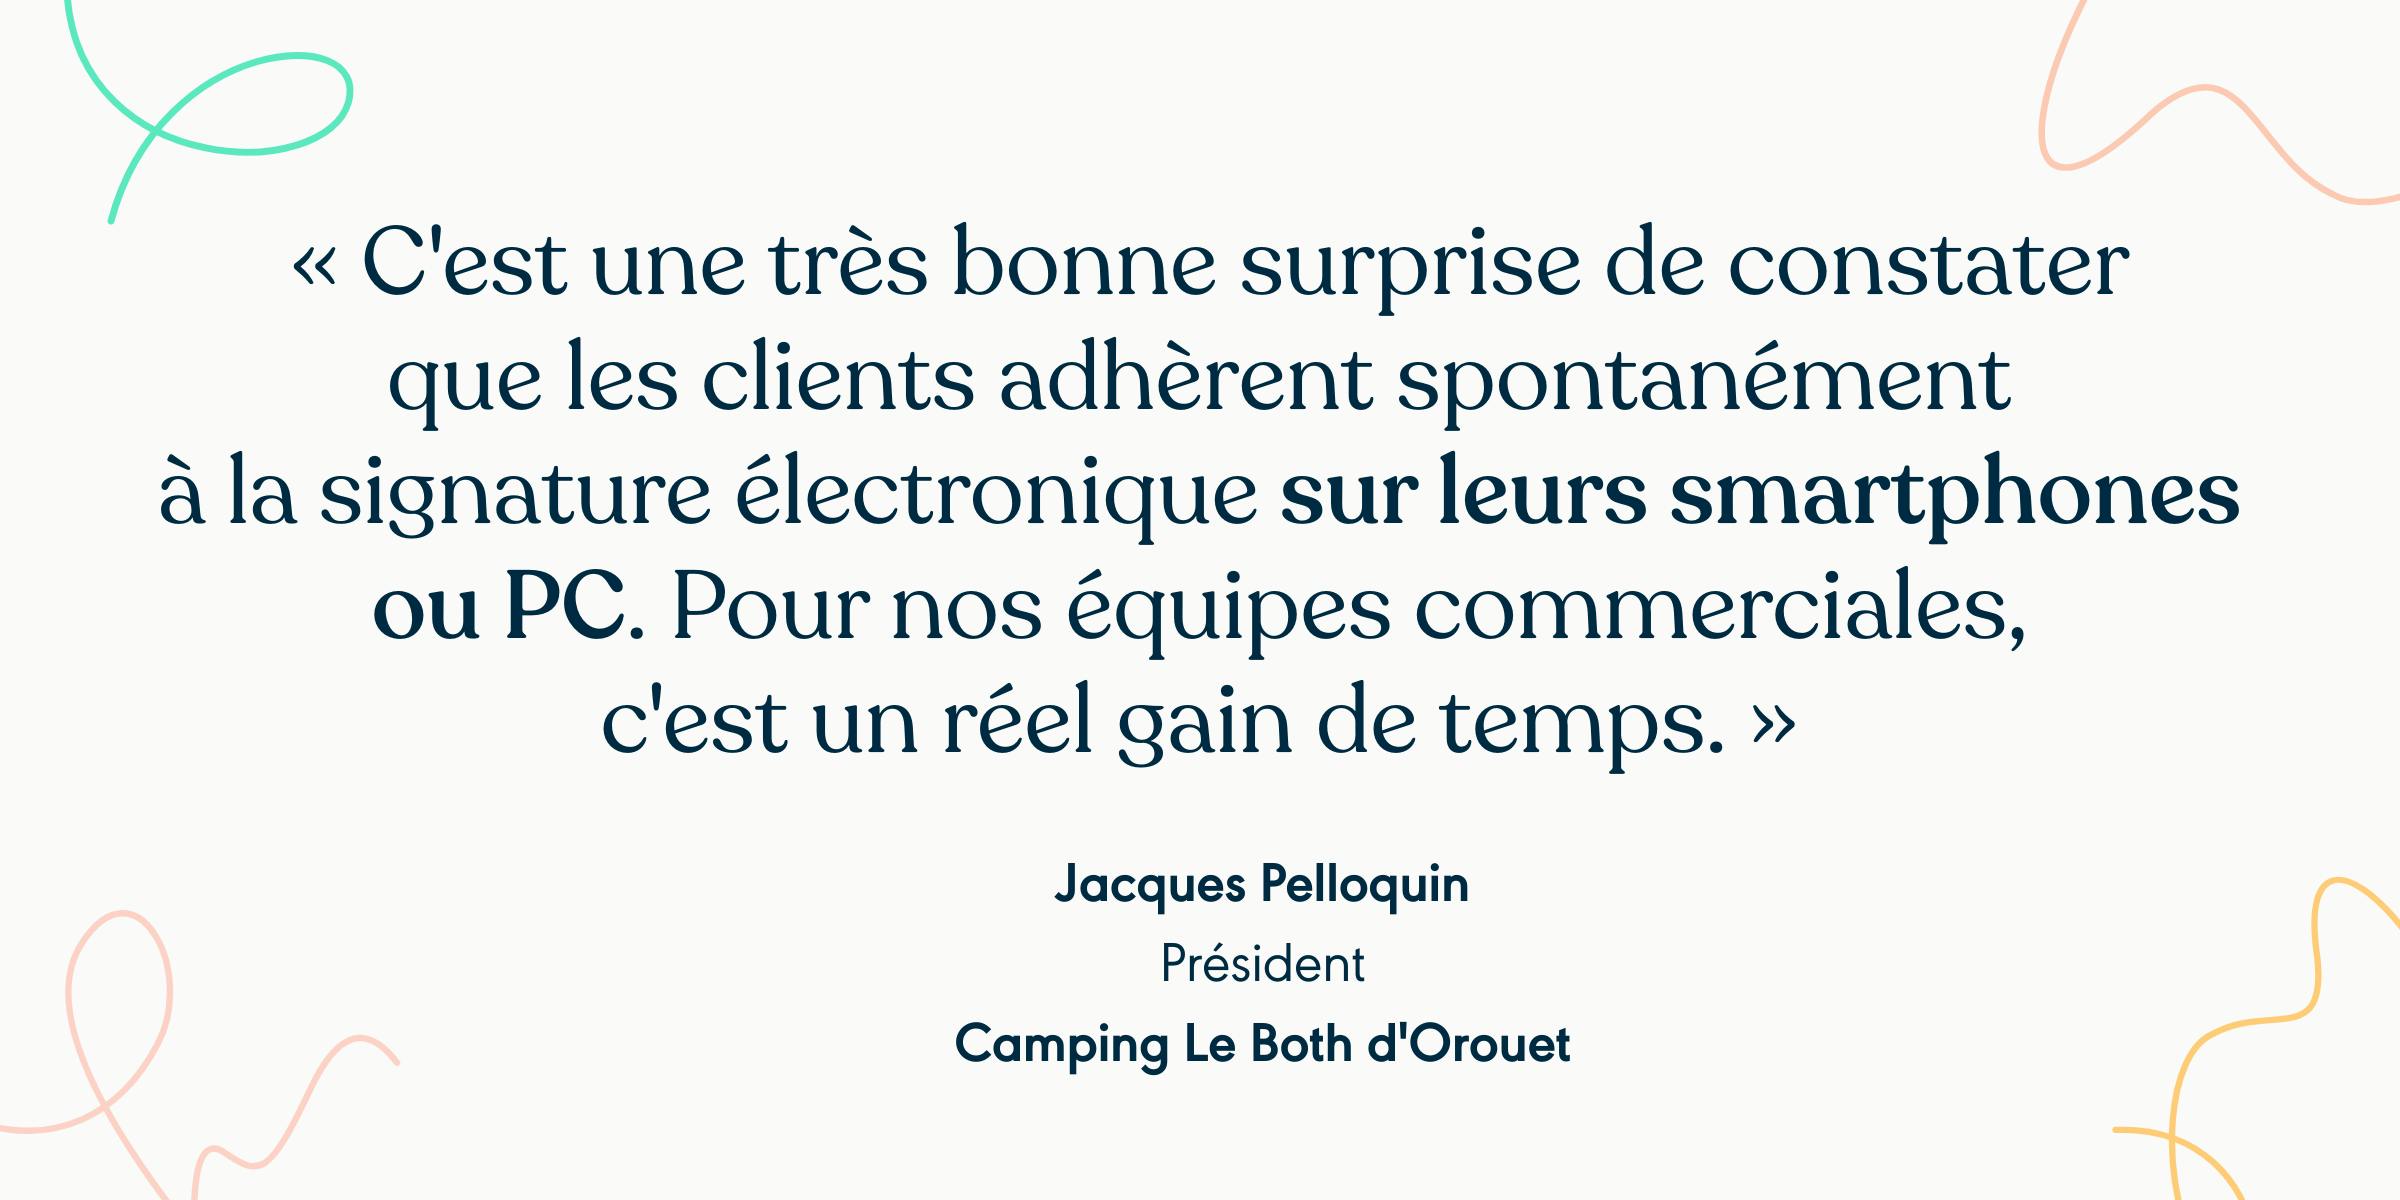 Quote du client Camping Le Both d’Orouet